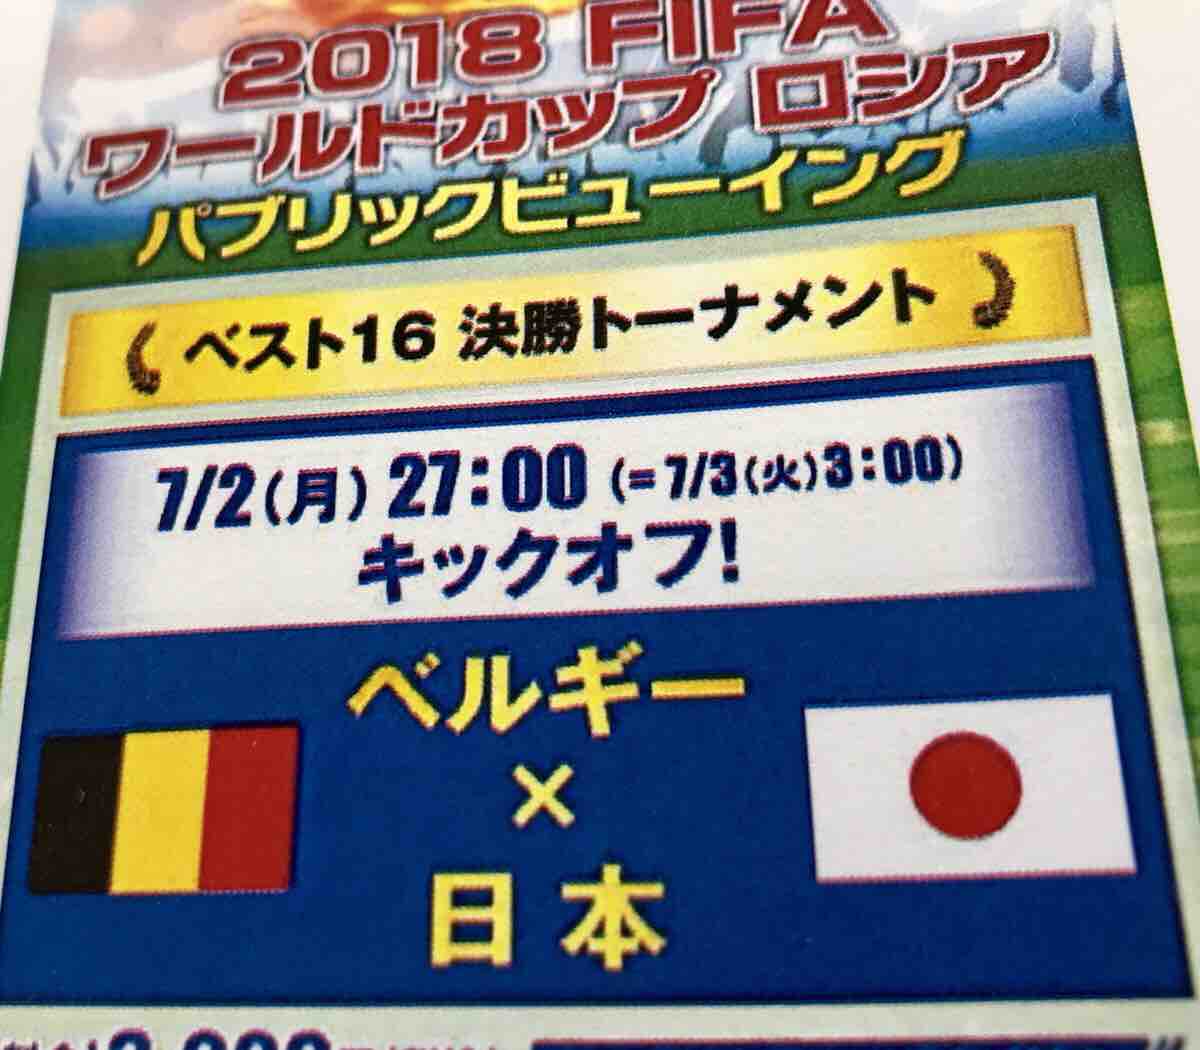 7 2 月 深夜 広島バルト11でfifaワールドカップロシア決勝トーナメント 日本vsベルギーの試合のパブリックビューイングが開催されるみたい まるごと安佐南 安佐北ブログ